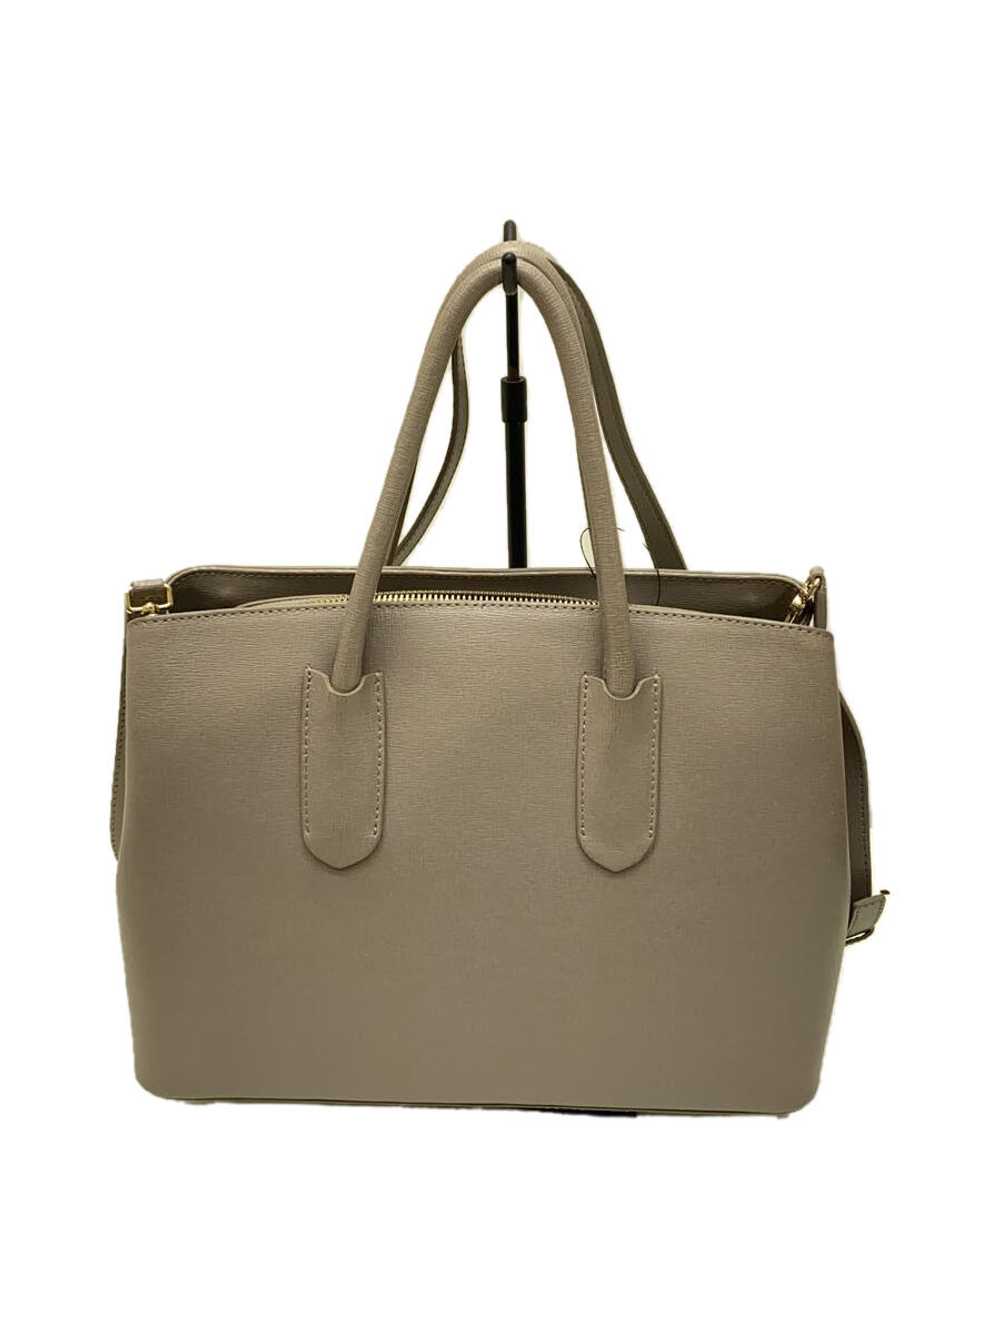 Furla/Handbag/Leather/Gray/Plain Bag - image 3